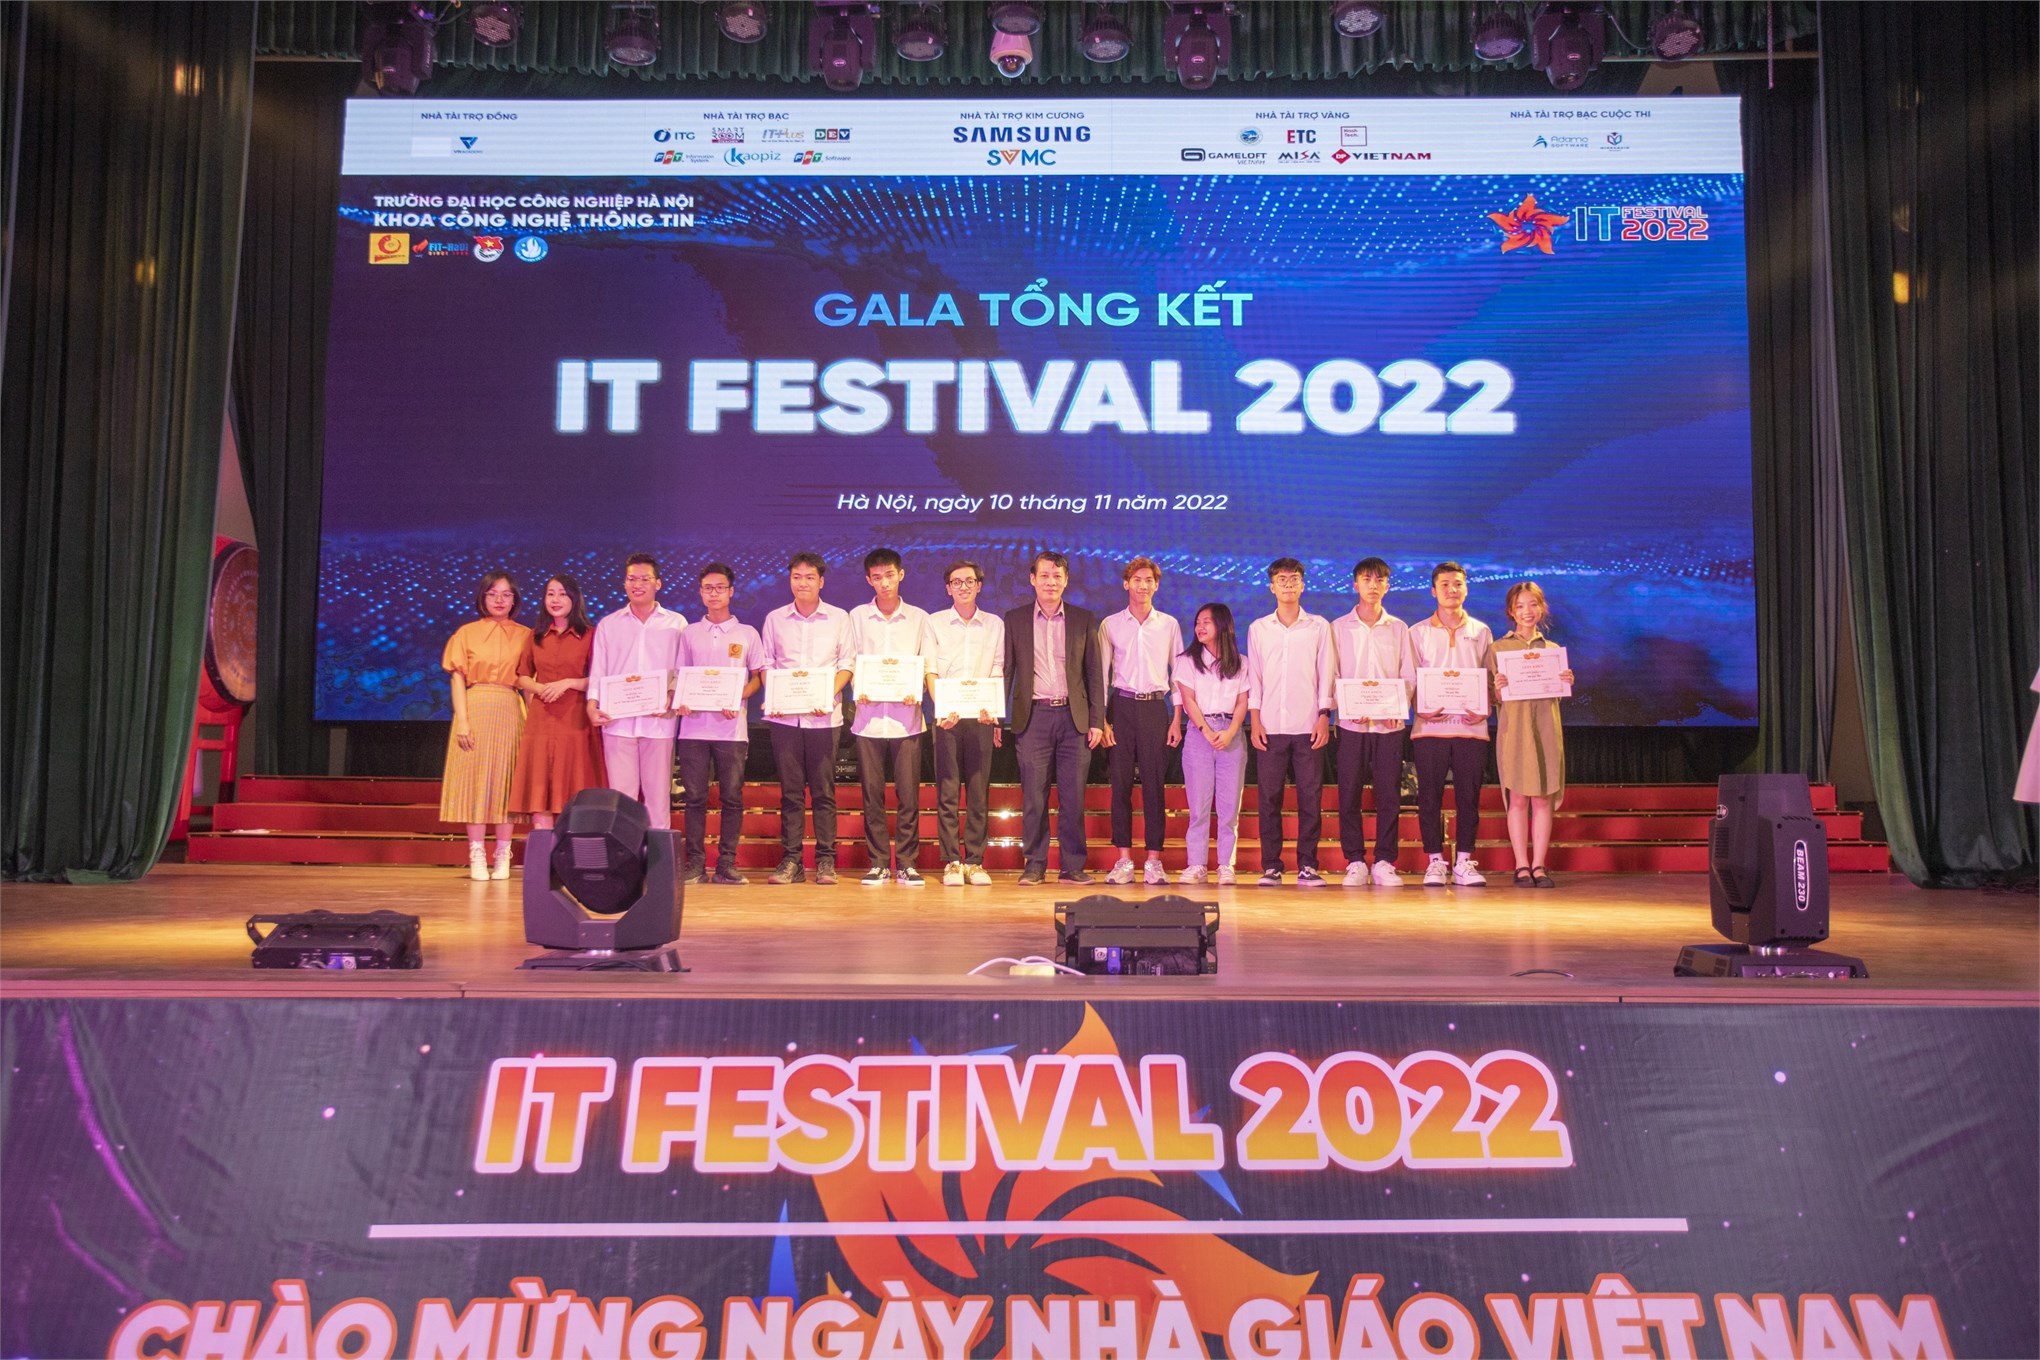 Ấn tượng và bùng cháy đêm Gala tổng kết IT Festival 2022